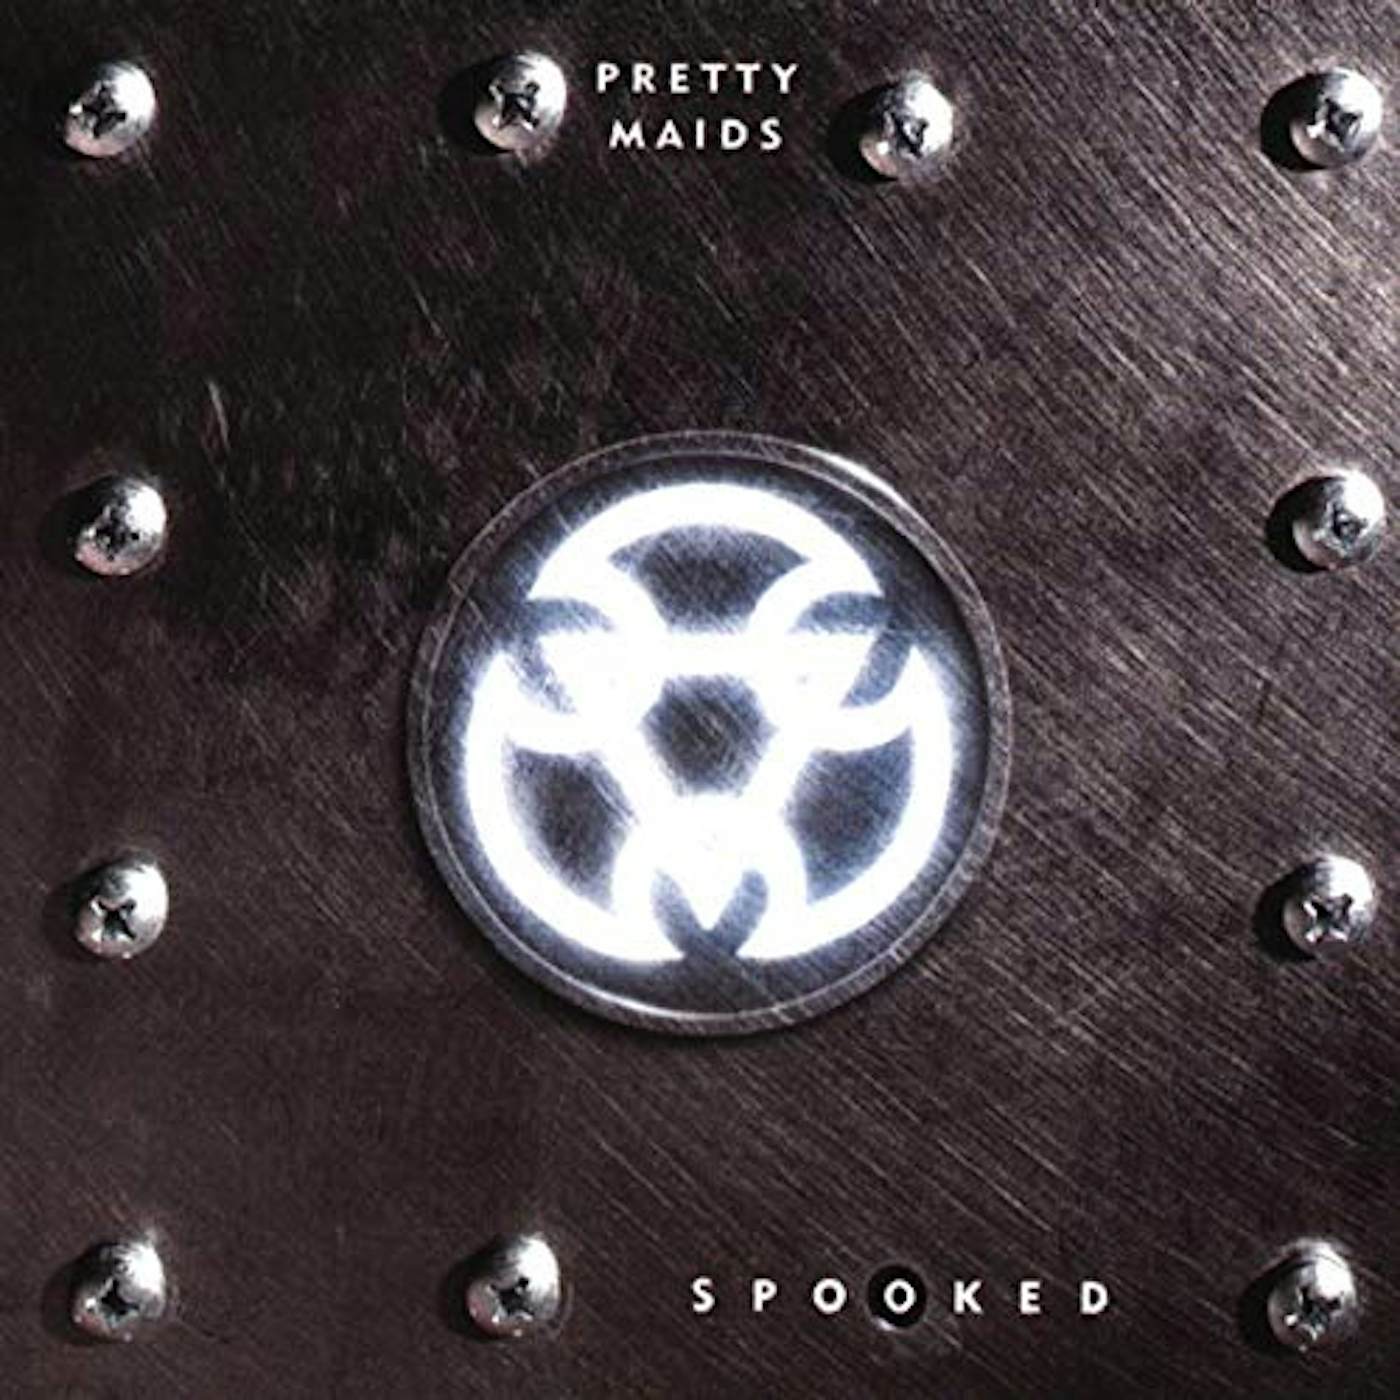 Pretty Maids Spooked Vinyl Record